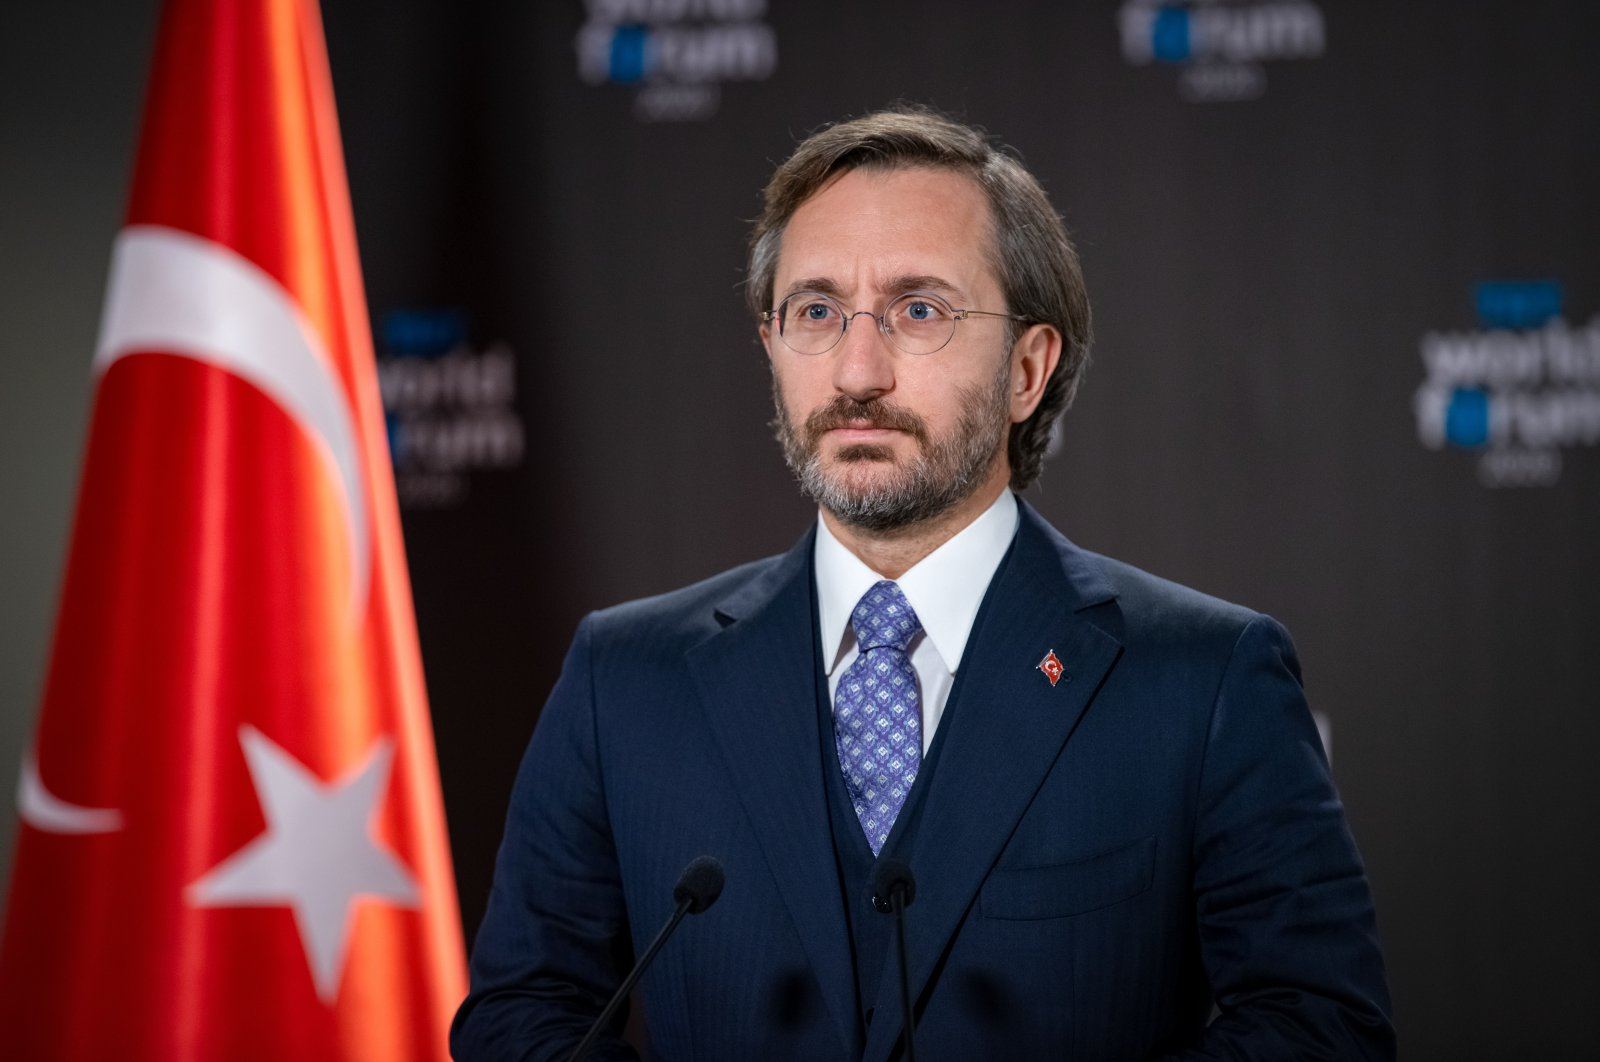 Турция решительно противостоит потокам лжи и дезинформации - Фахреттин Алтун